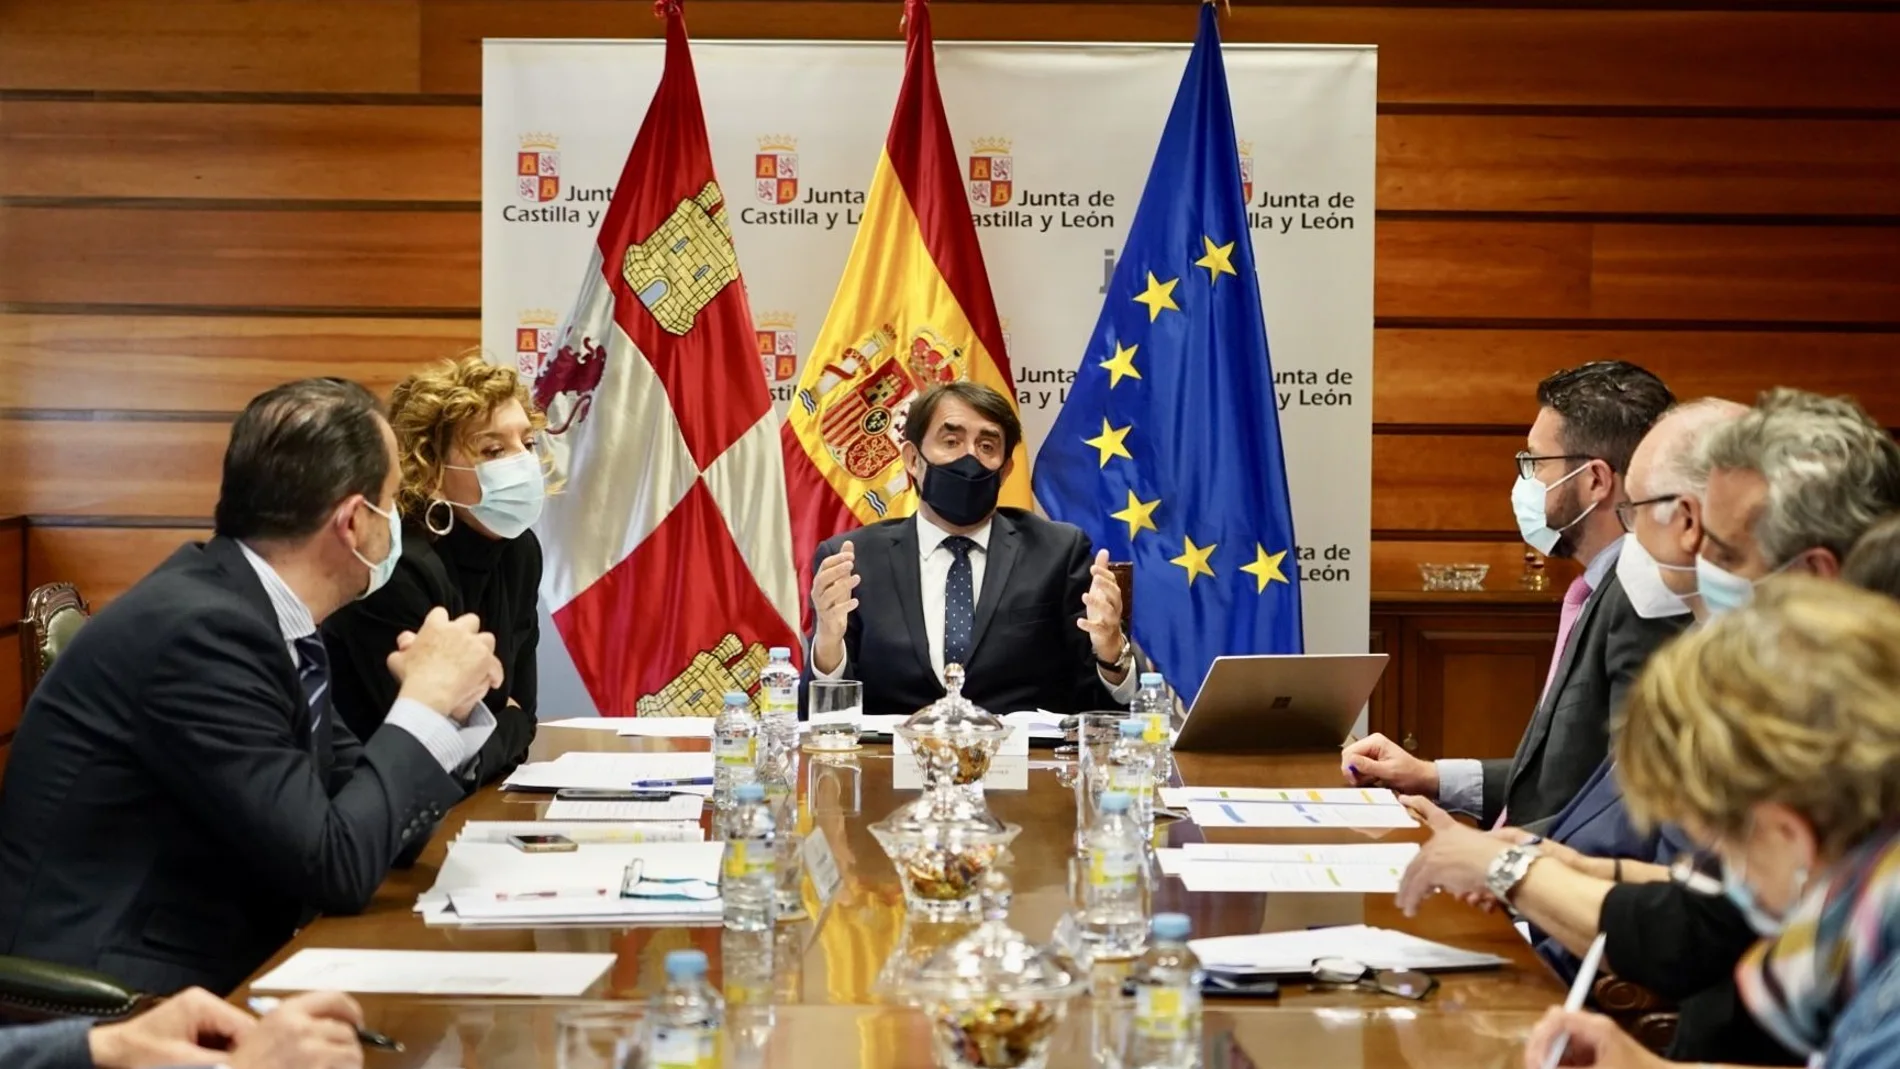 El consejero Juan Carlos Suárez-Quiñones informa sobre la resolución de la convocatoria de ayudas al alquiler de vivienda 2021 en Castilla y León